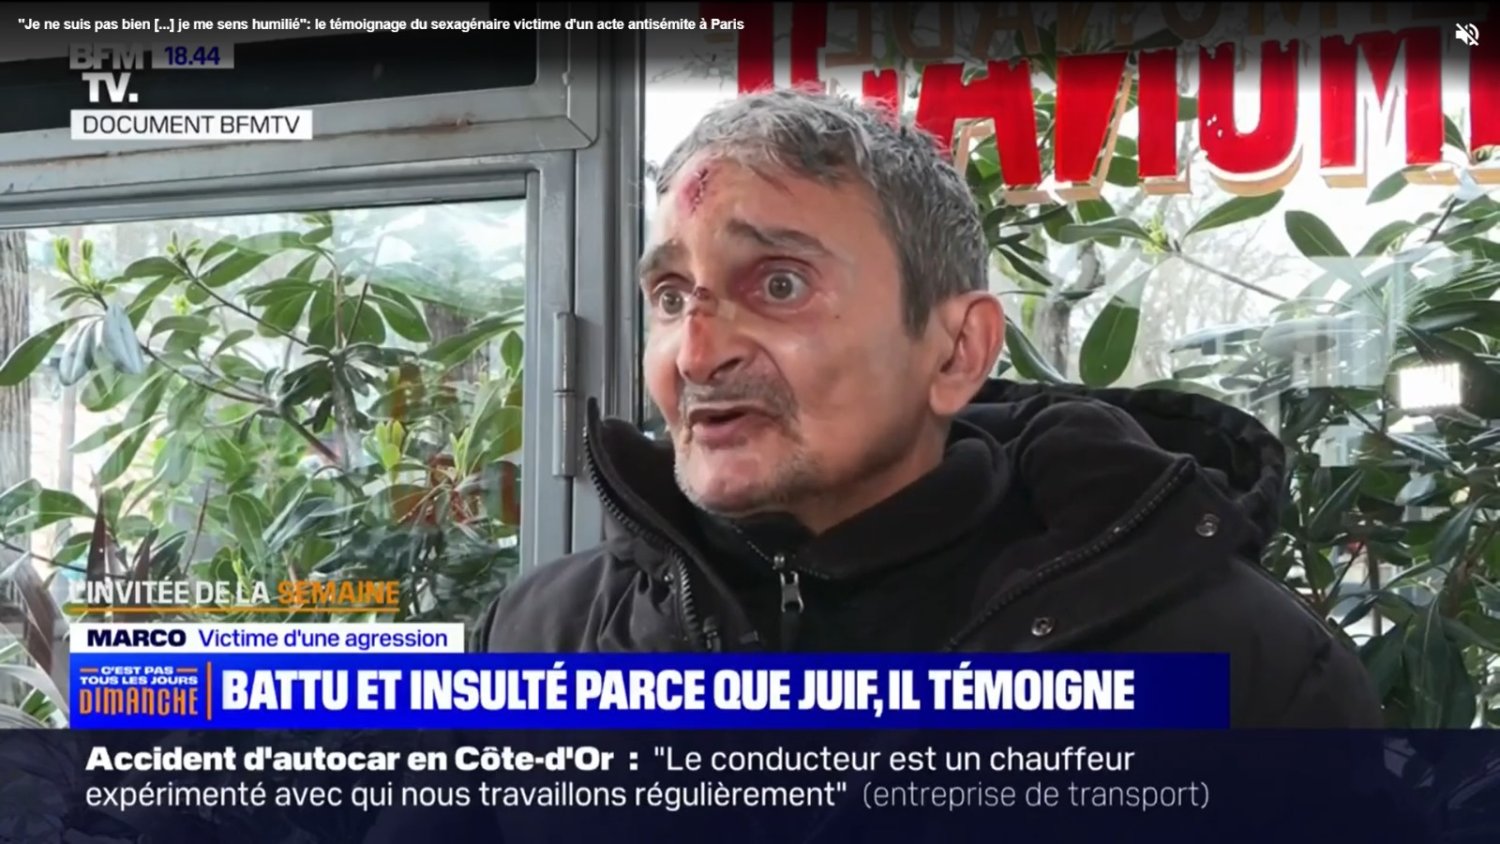 Antisémitisme : un homme juif de 62 ans agressé à Paris, solidarité !